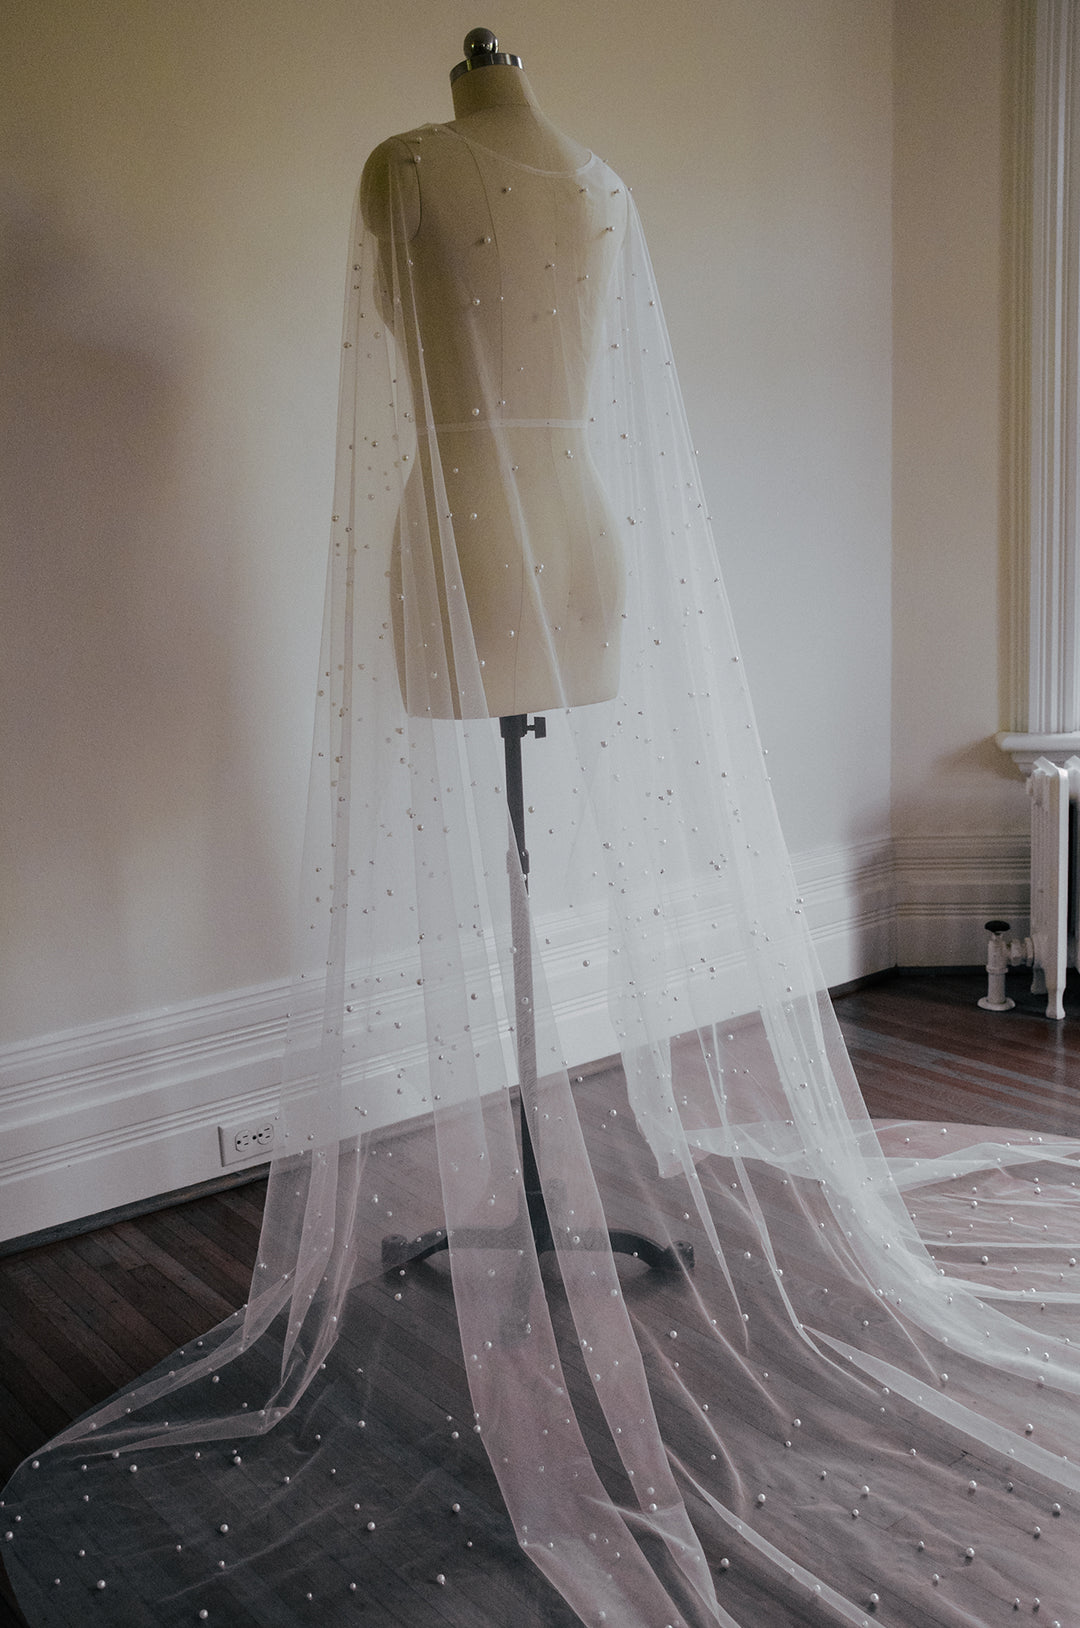 Pearl bridal cape